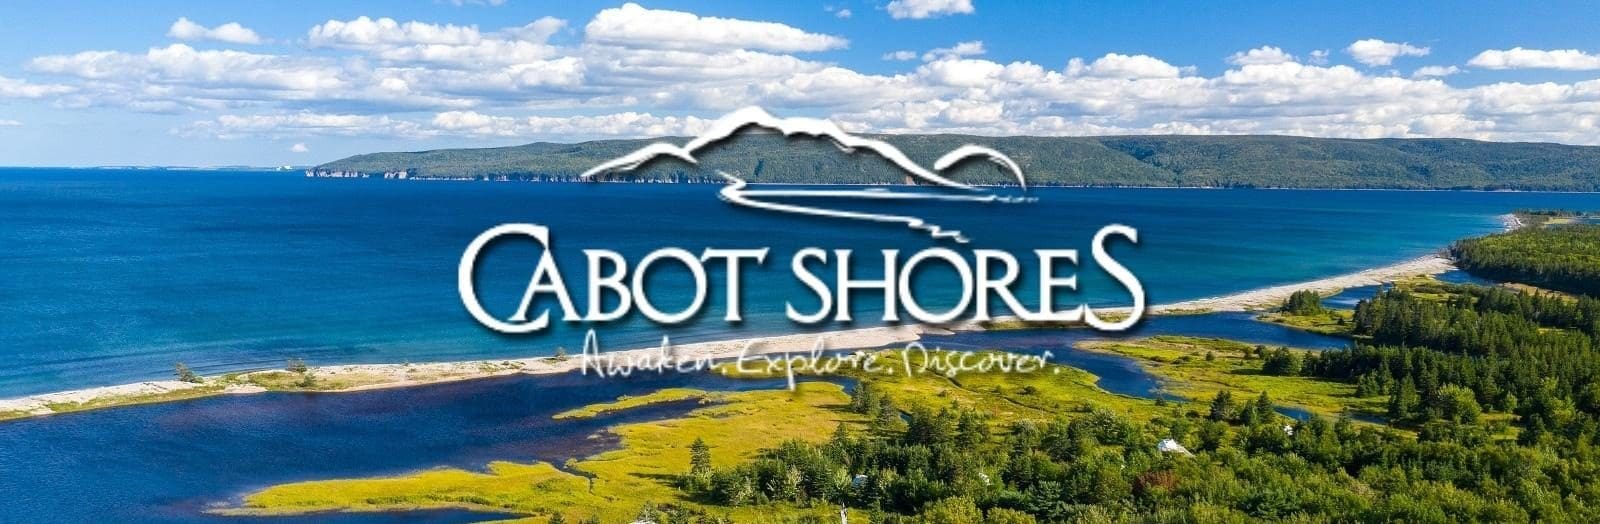 Cabot Shores Wilderness Resort